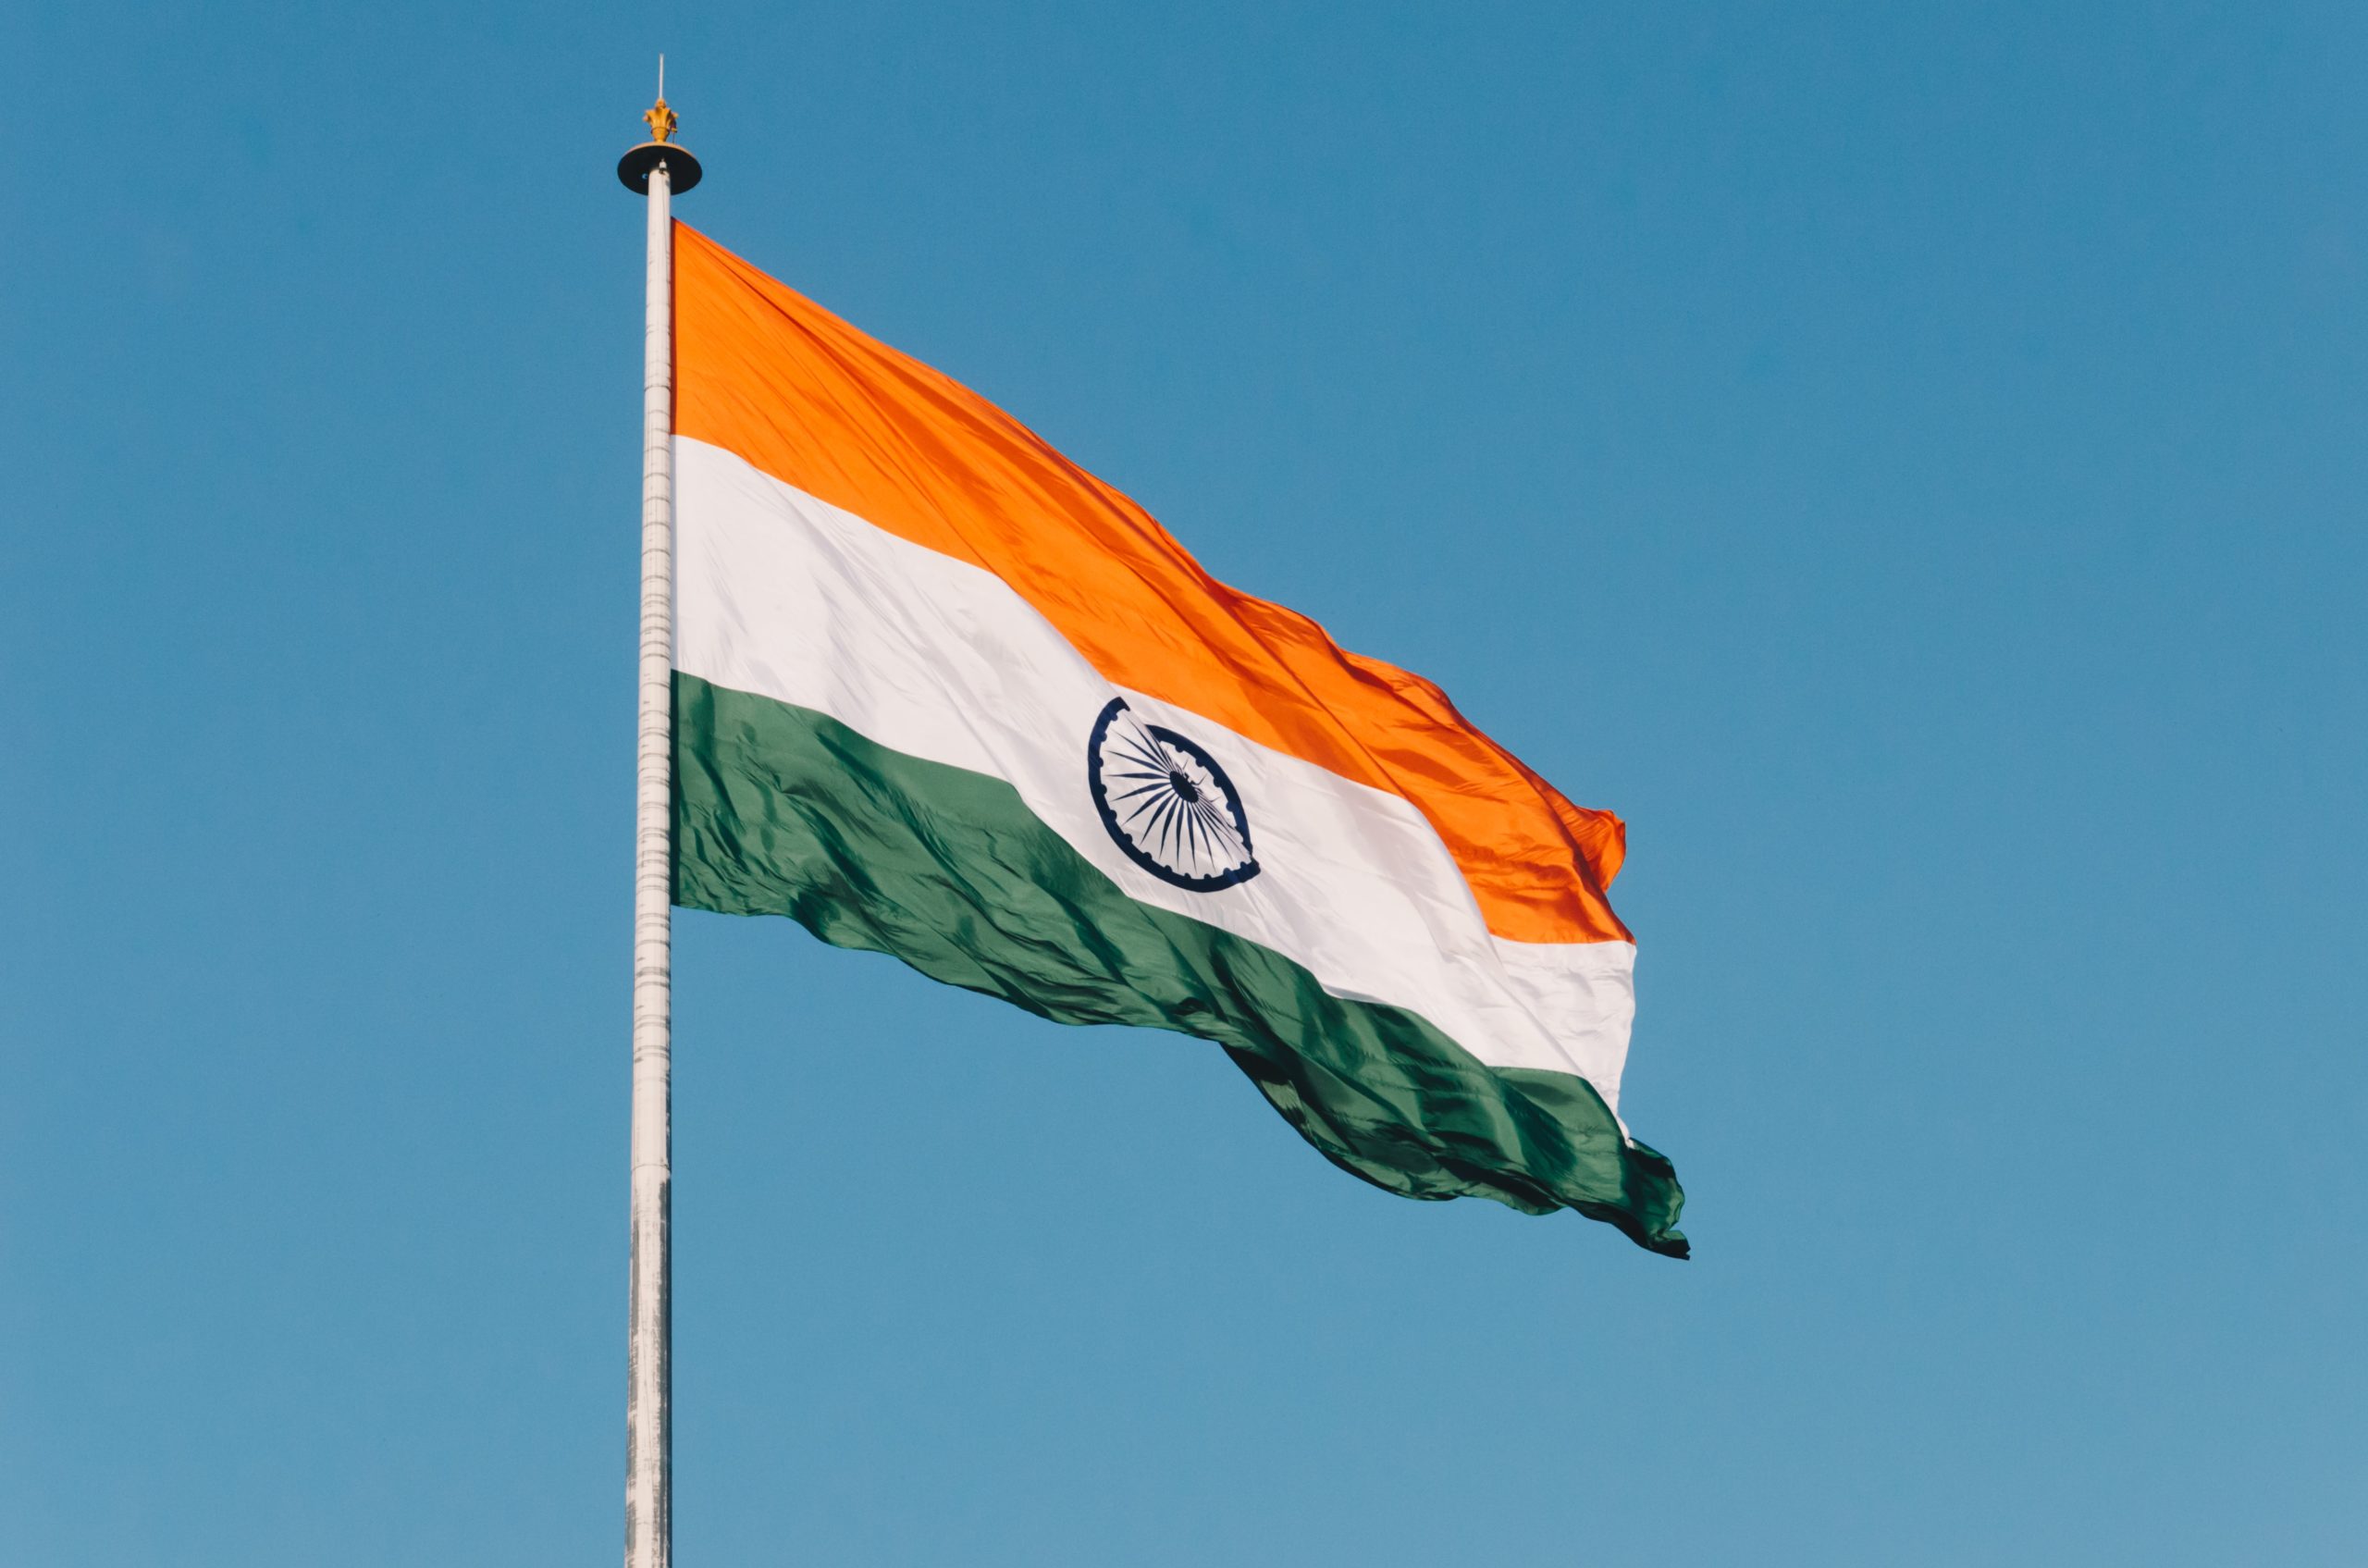 UK India Free Trade Agreement credit naveed ahmed via unsplash